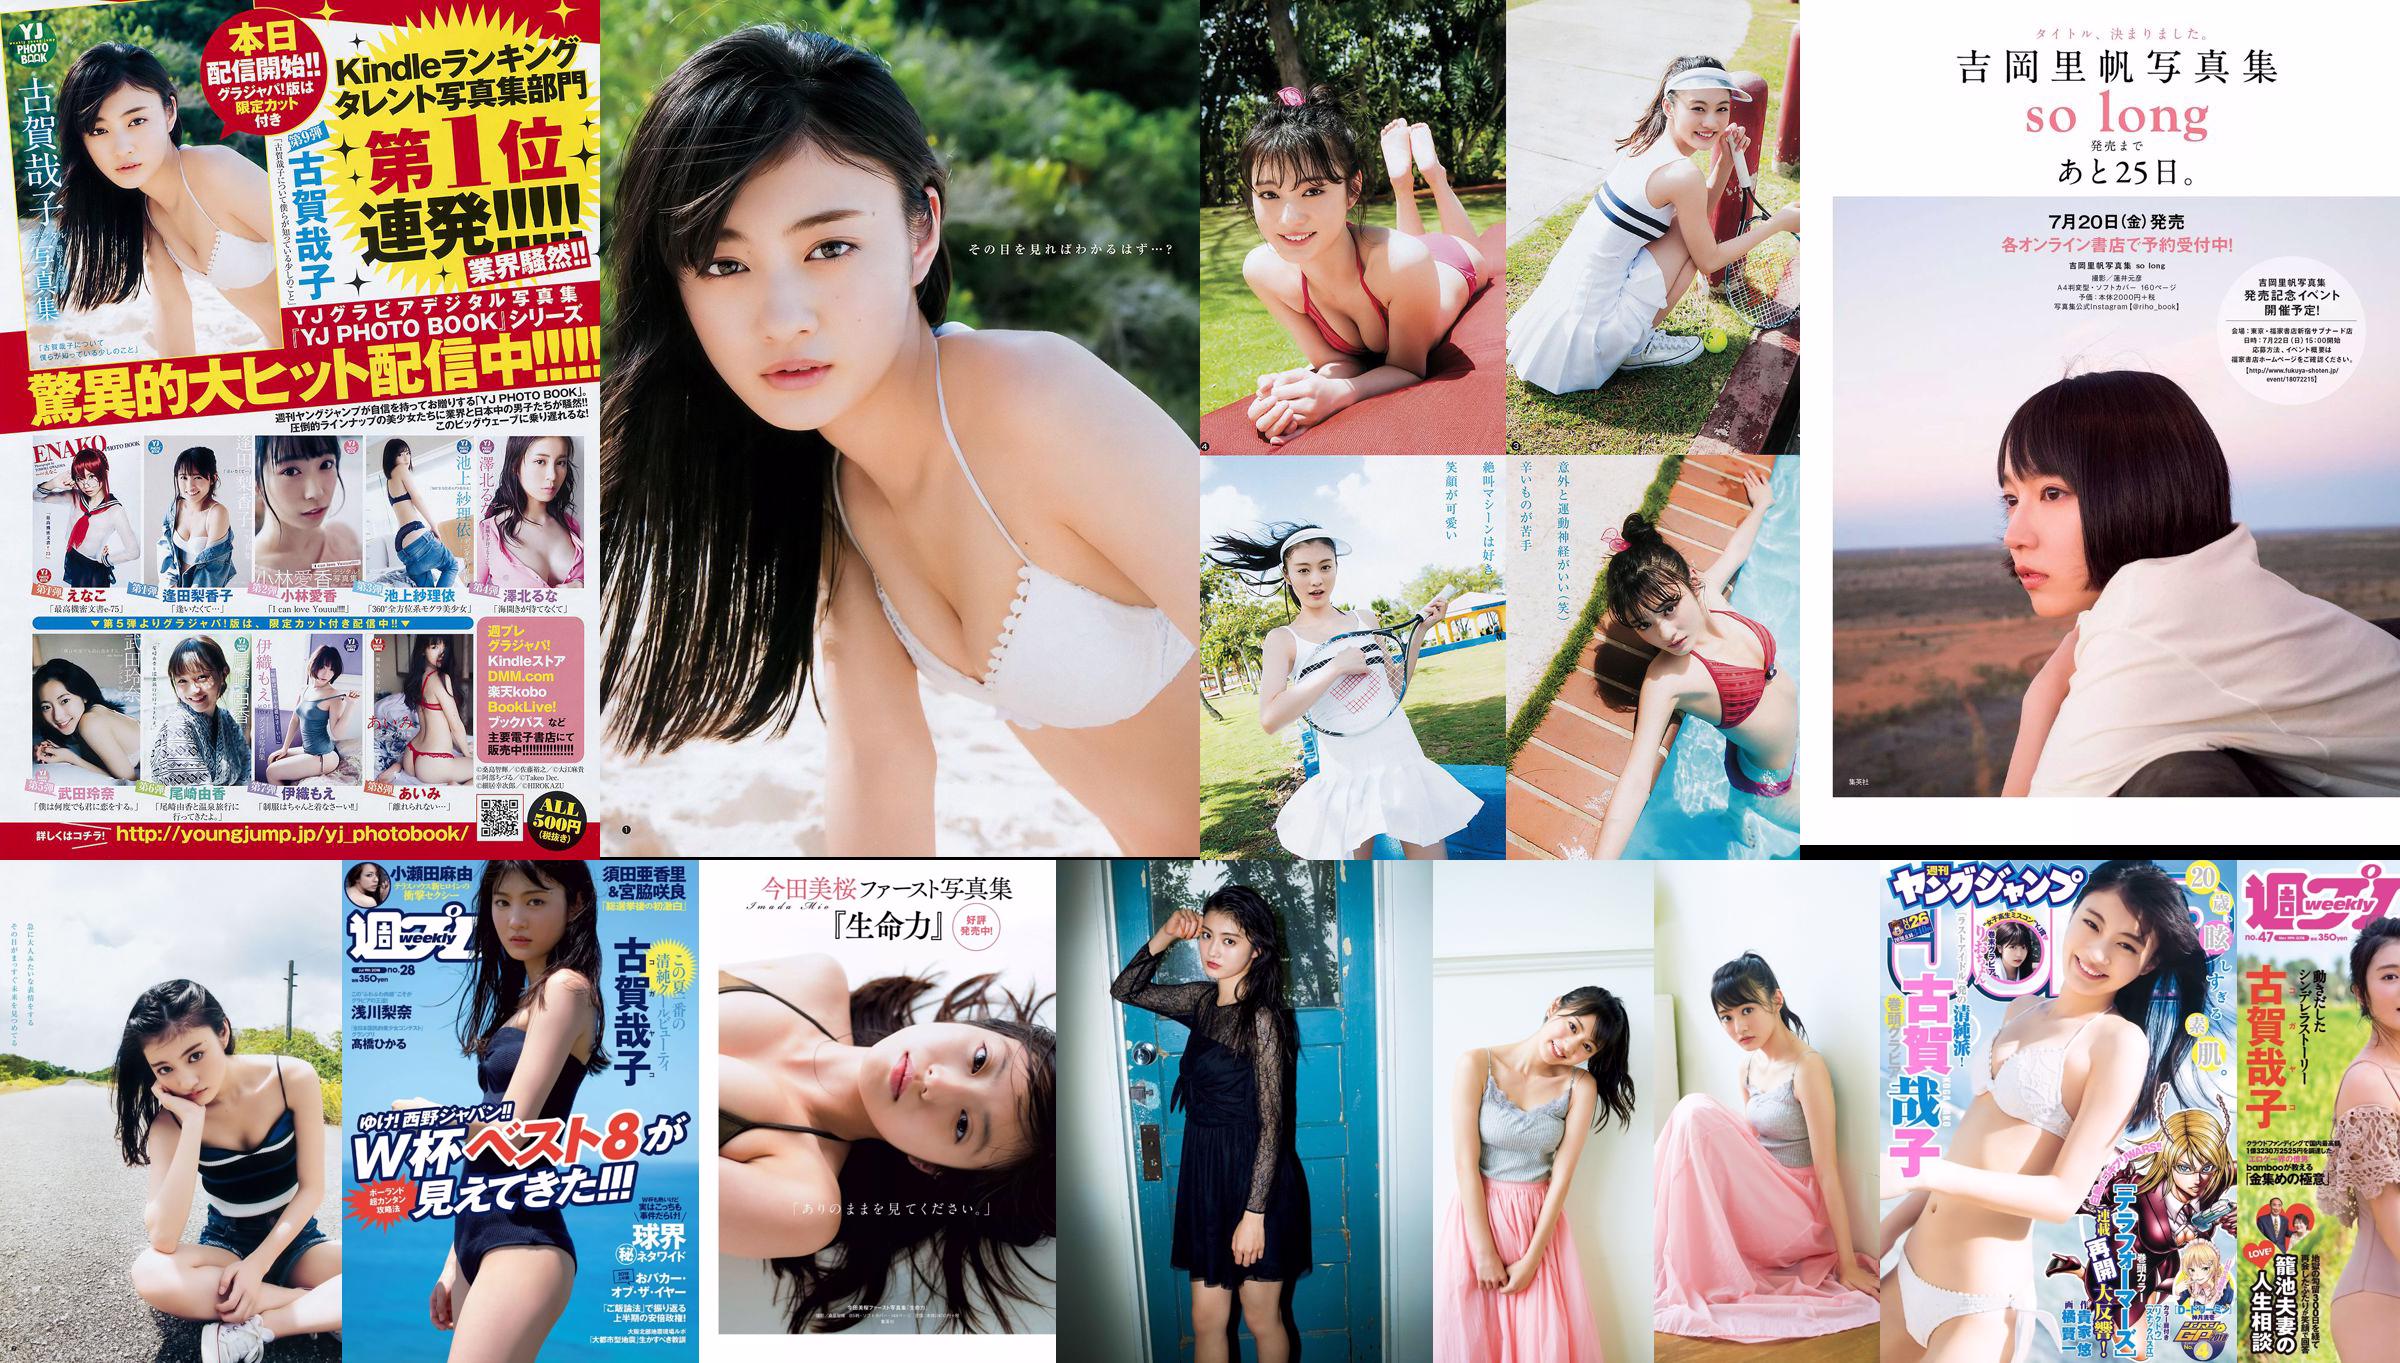 古賀哉子 りおちょん [Weekly Young Jump] 2018年No.26 写真杂志 No.54521a 第3頁